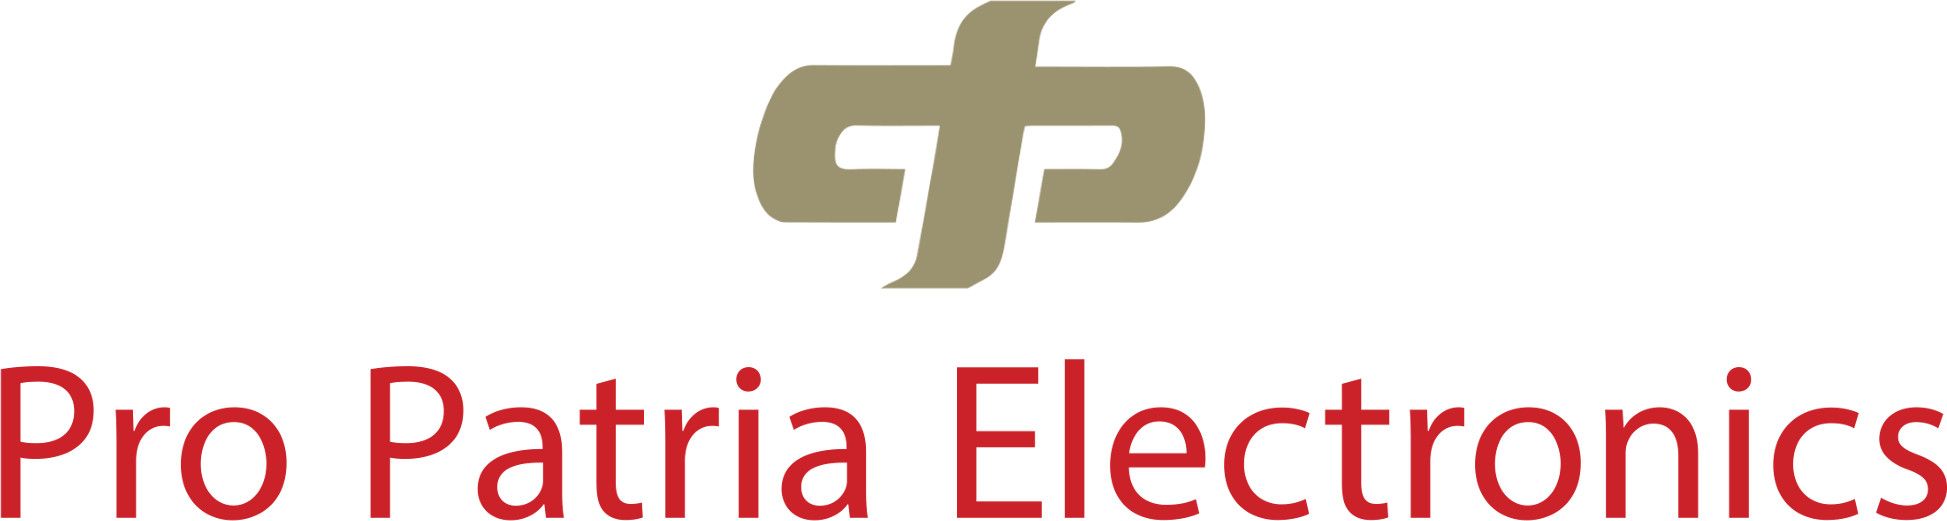 Pro Patria Electronics 